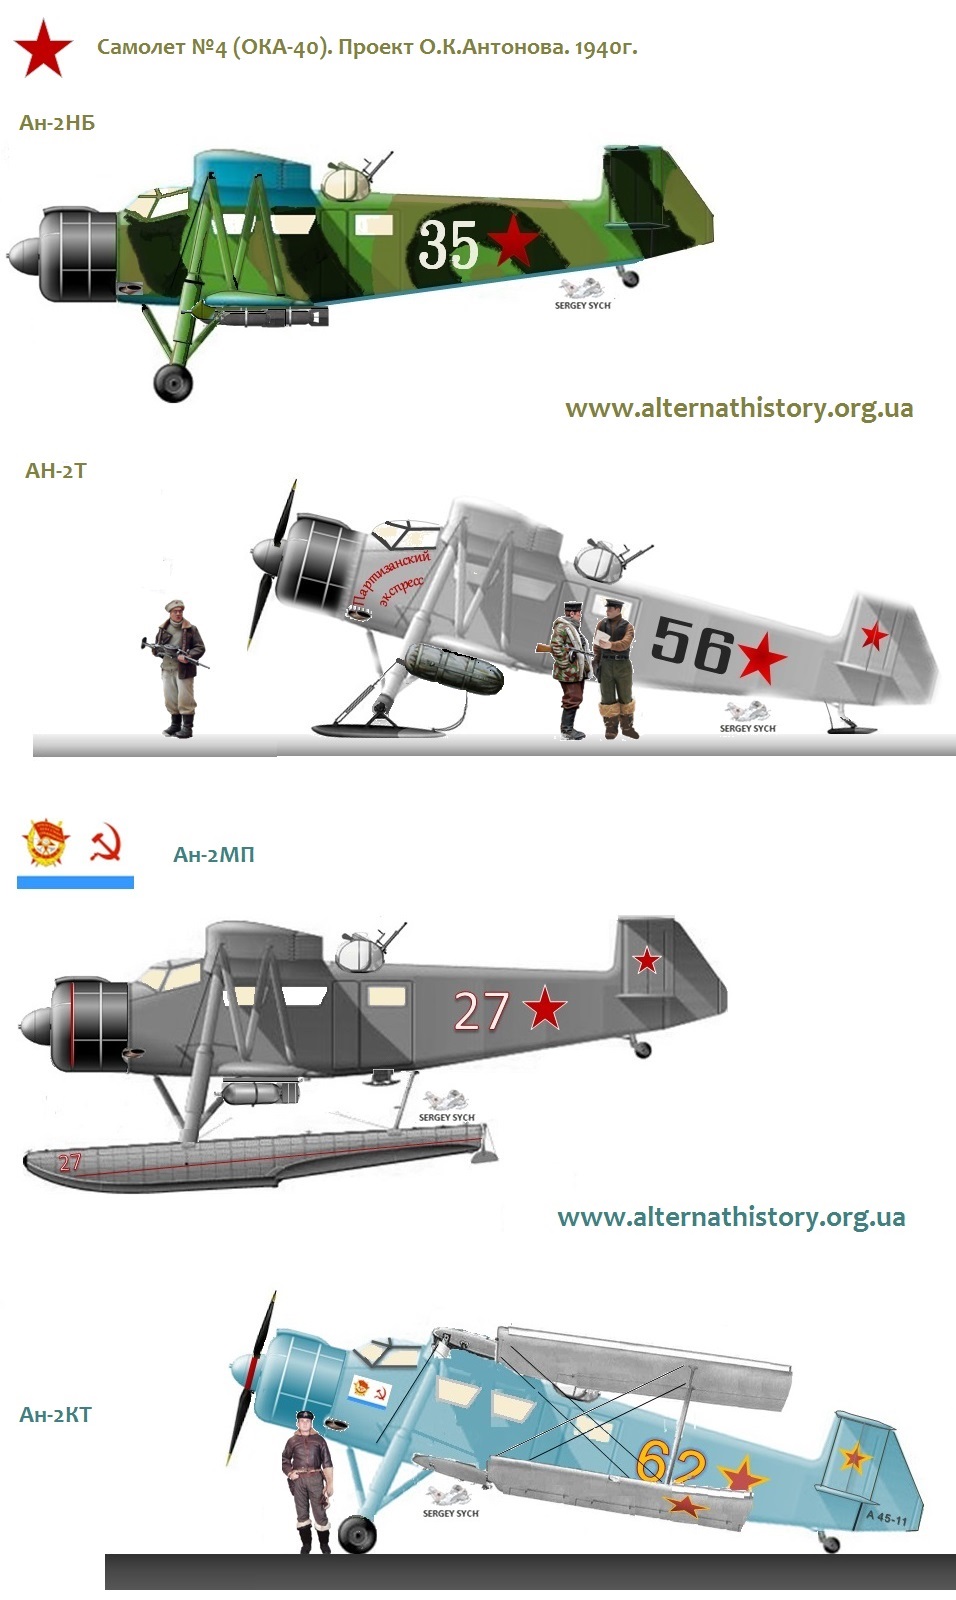 Предшественник Ан-2. Самолет №4 (ОКА-40).Проект Антонова 1940г.